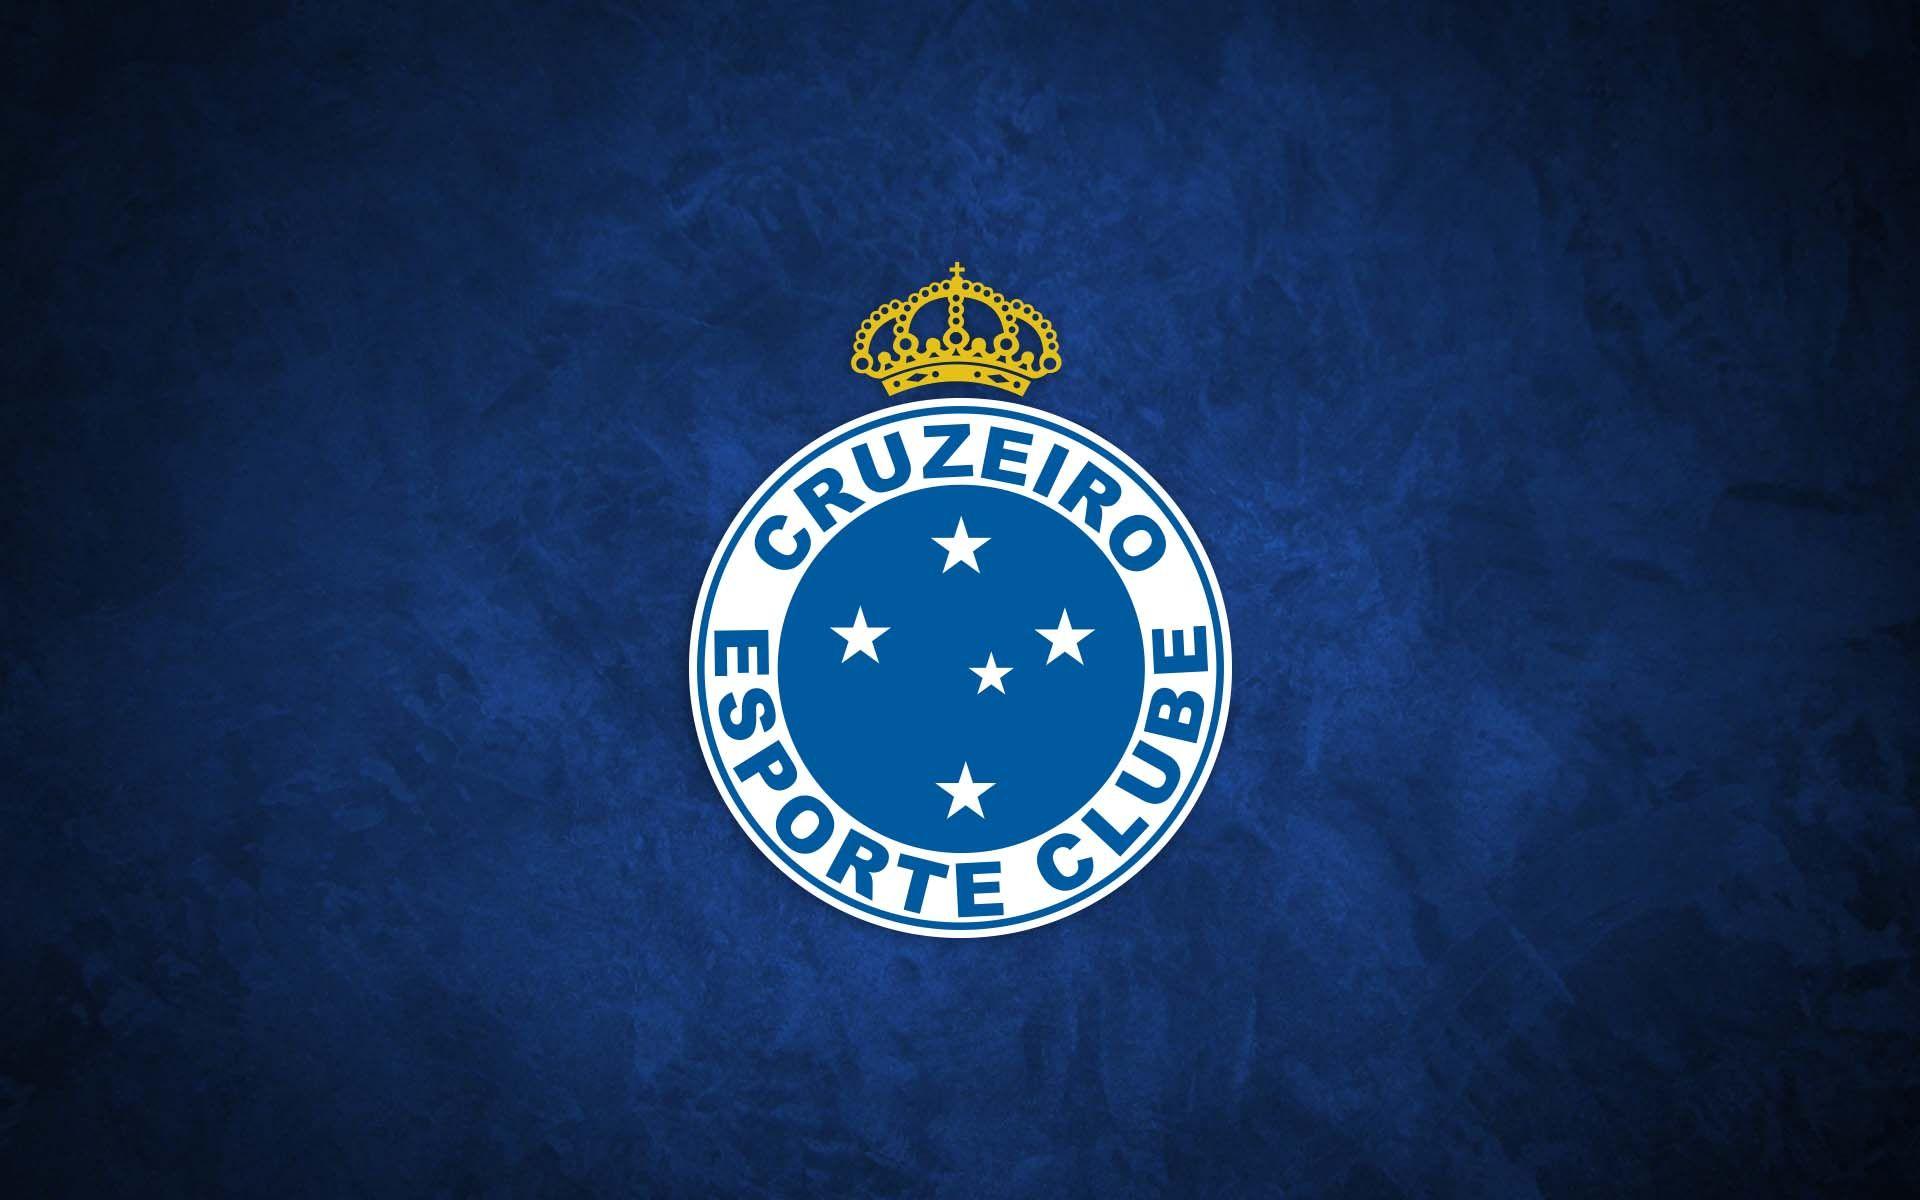 Cruzeiro. Pinteres